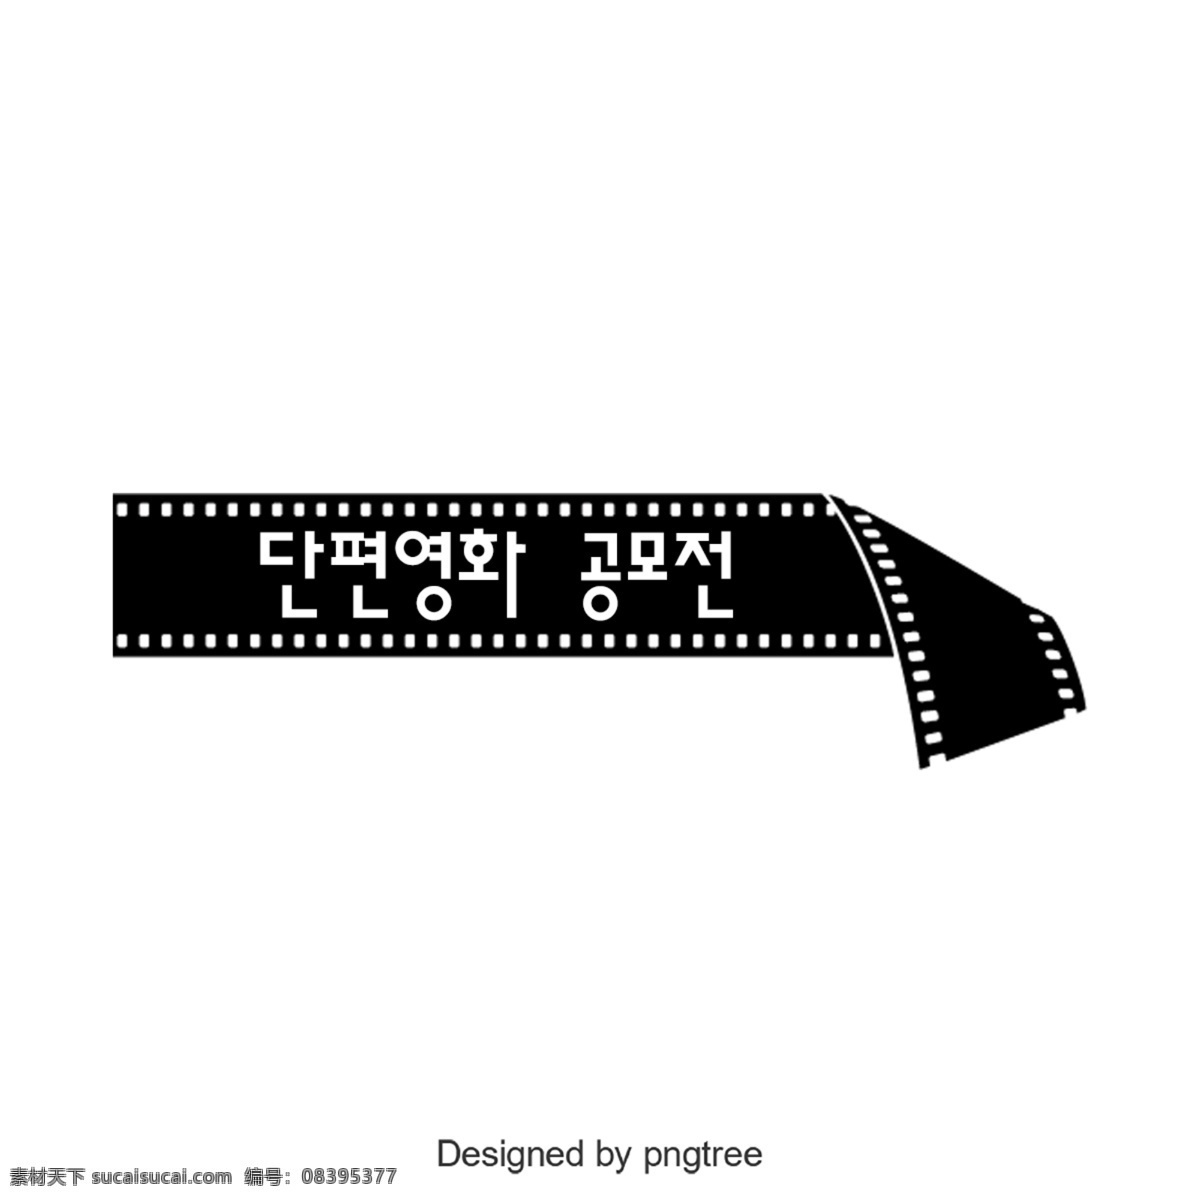 短片 大奖赛 简单 字体 韩文 字形 黑金 负片 切片